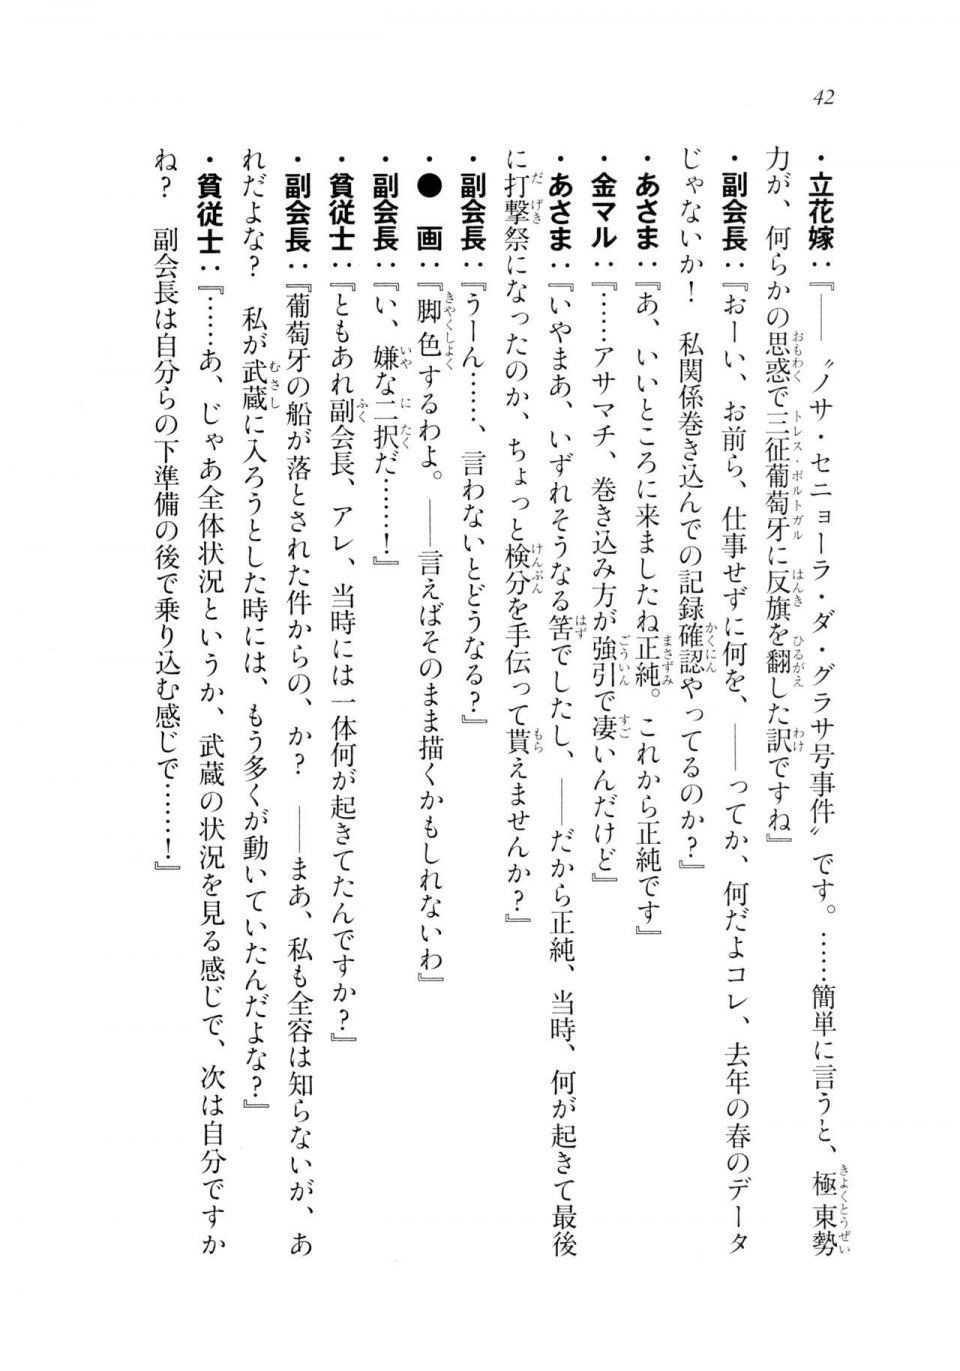 Kyoukai Senjou no Horizon LN Sidestory Vol 2 - Photo #40